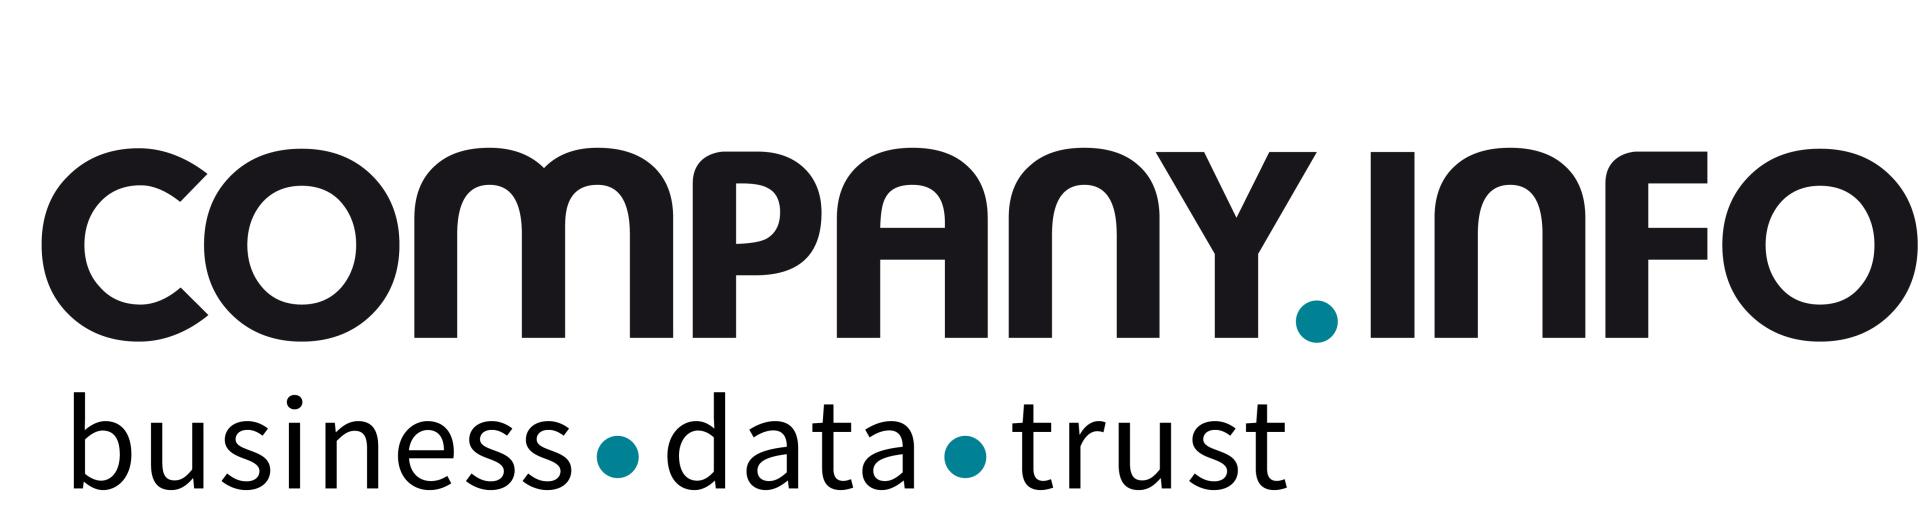 comapny-info-Logo